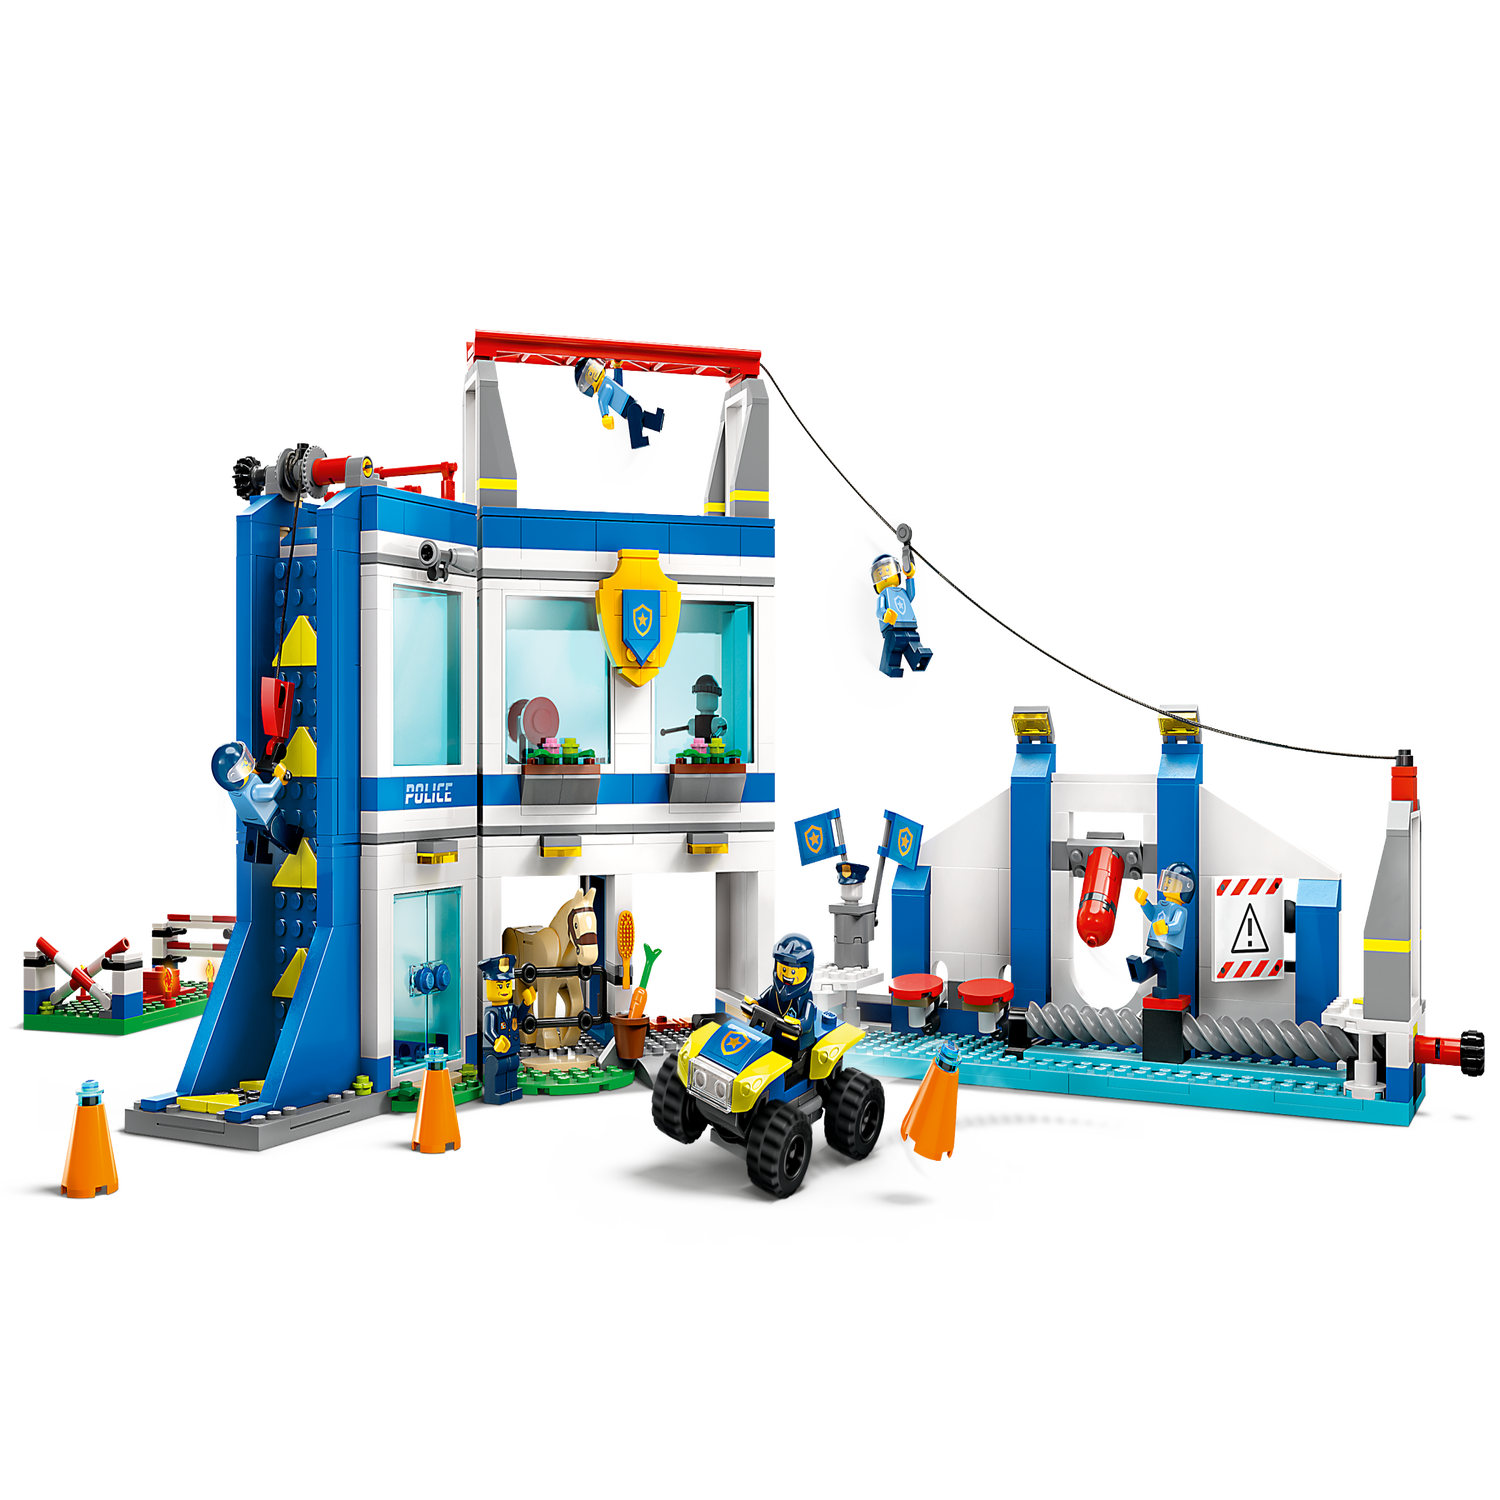 LEGO City 60372 Le Centre d'Entraînement de la Police